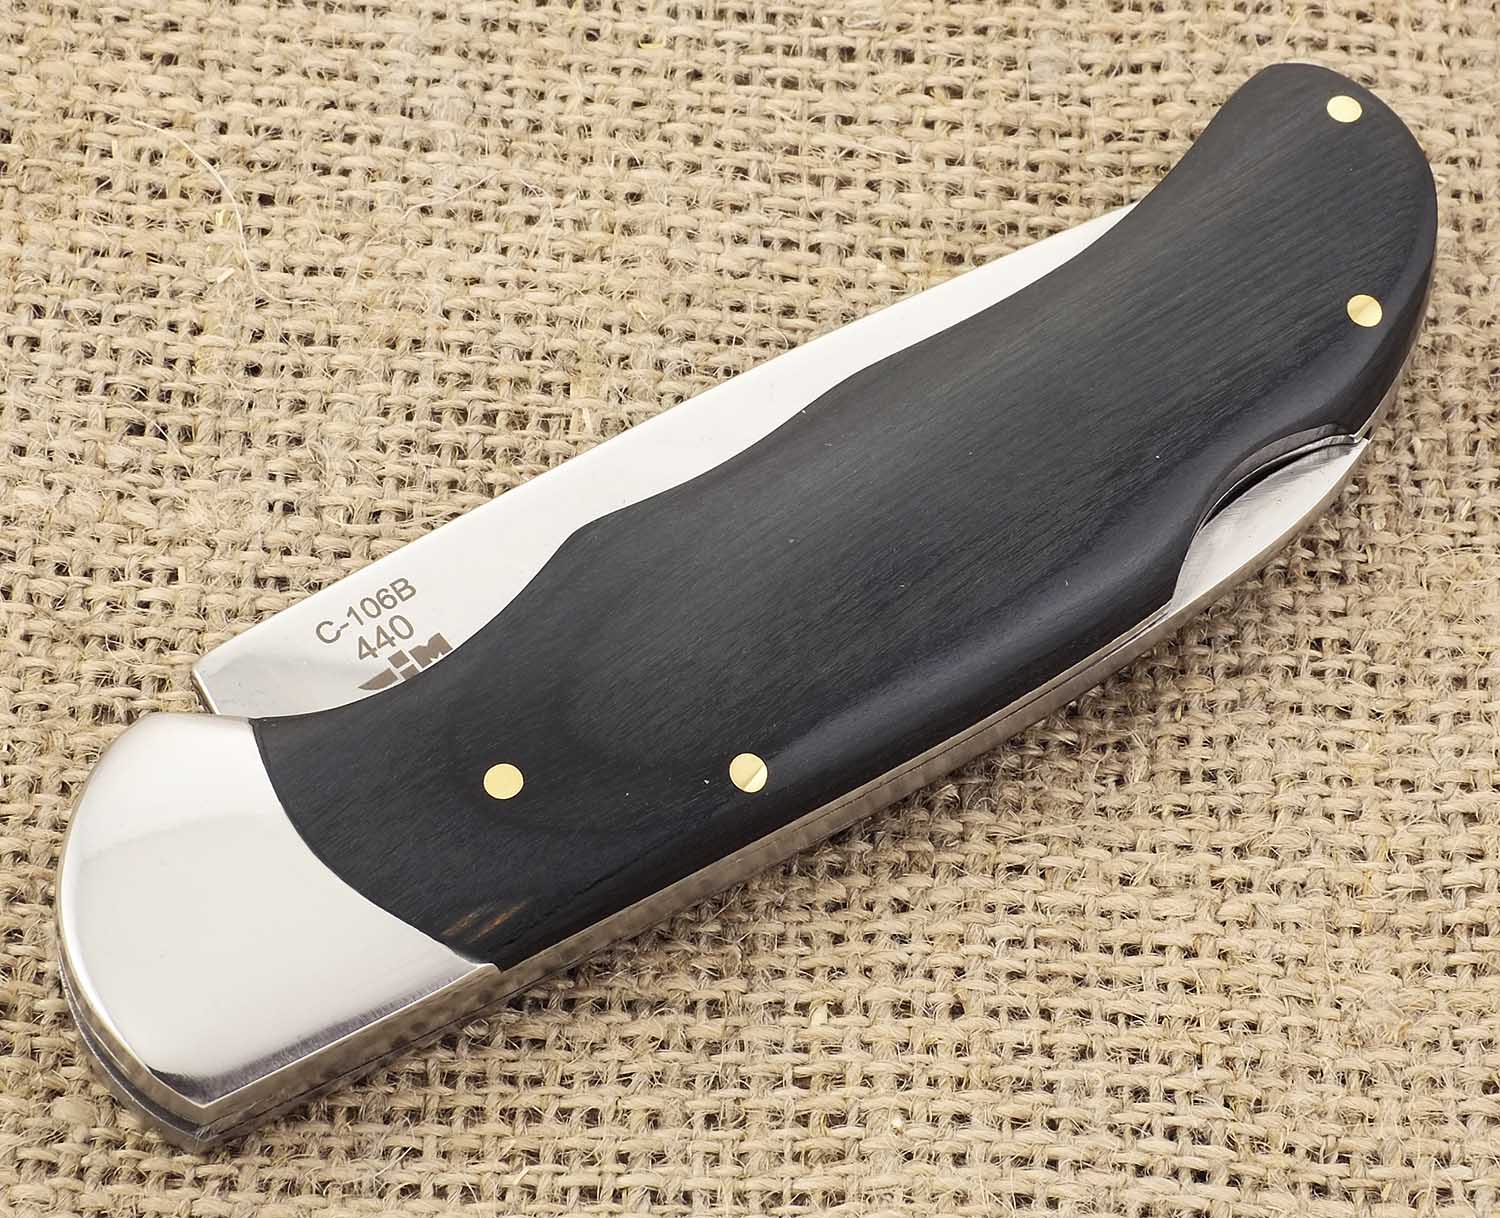 Нож складной деревянная рукоять Ножемир Лесник C-106BN